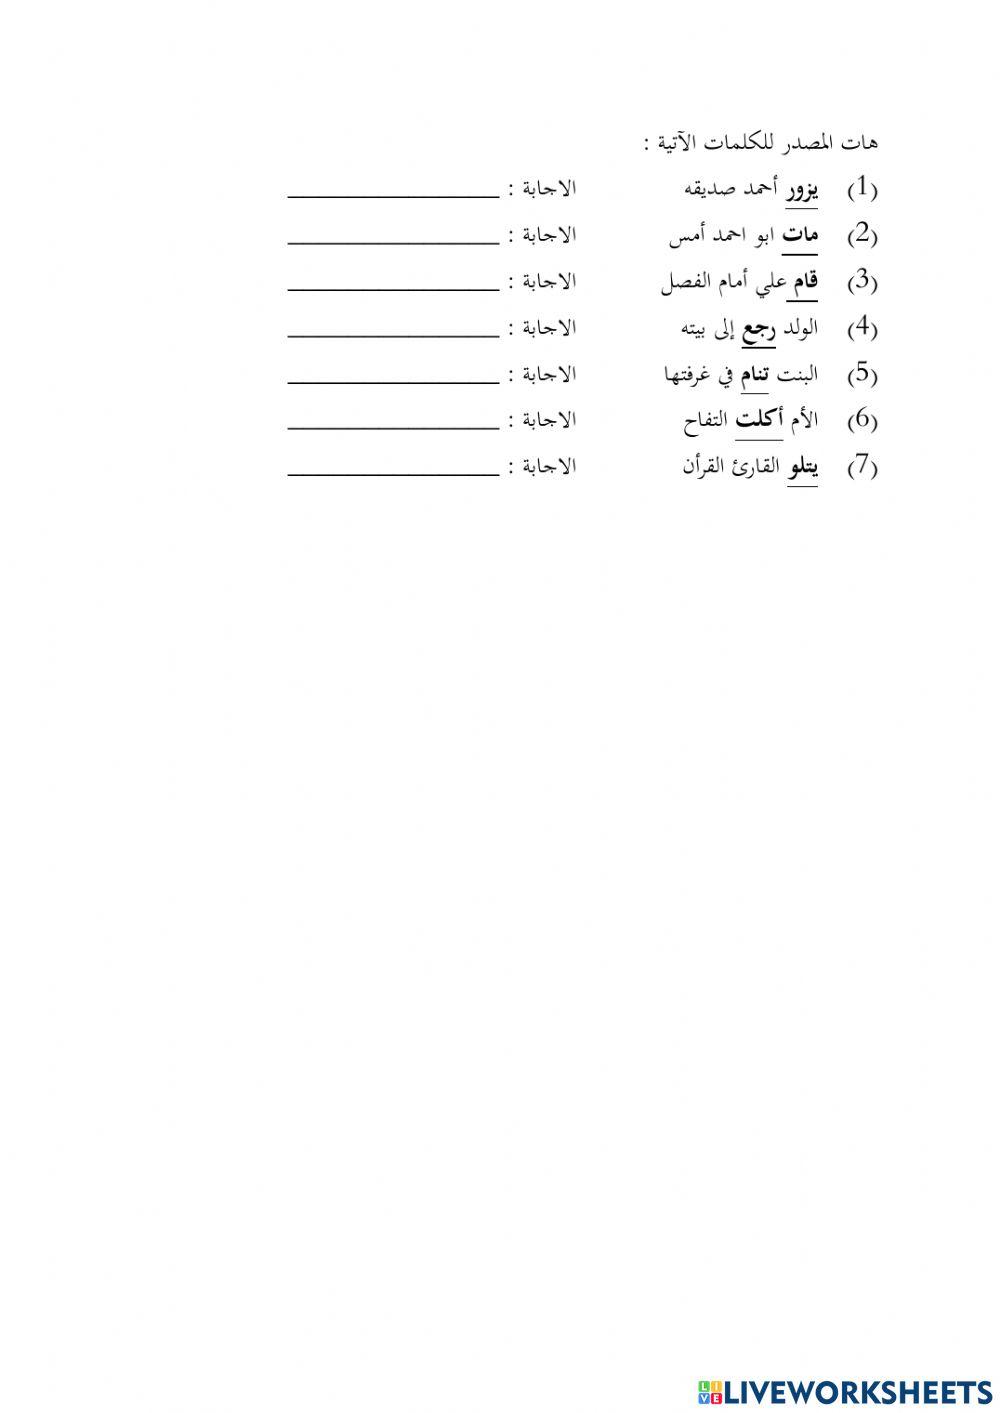 Pentaksiran bahasa arab ting 4